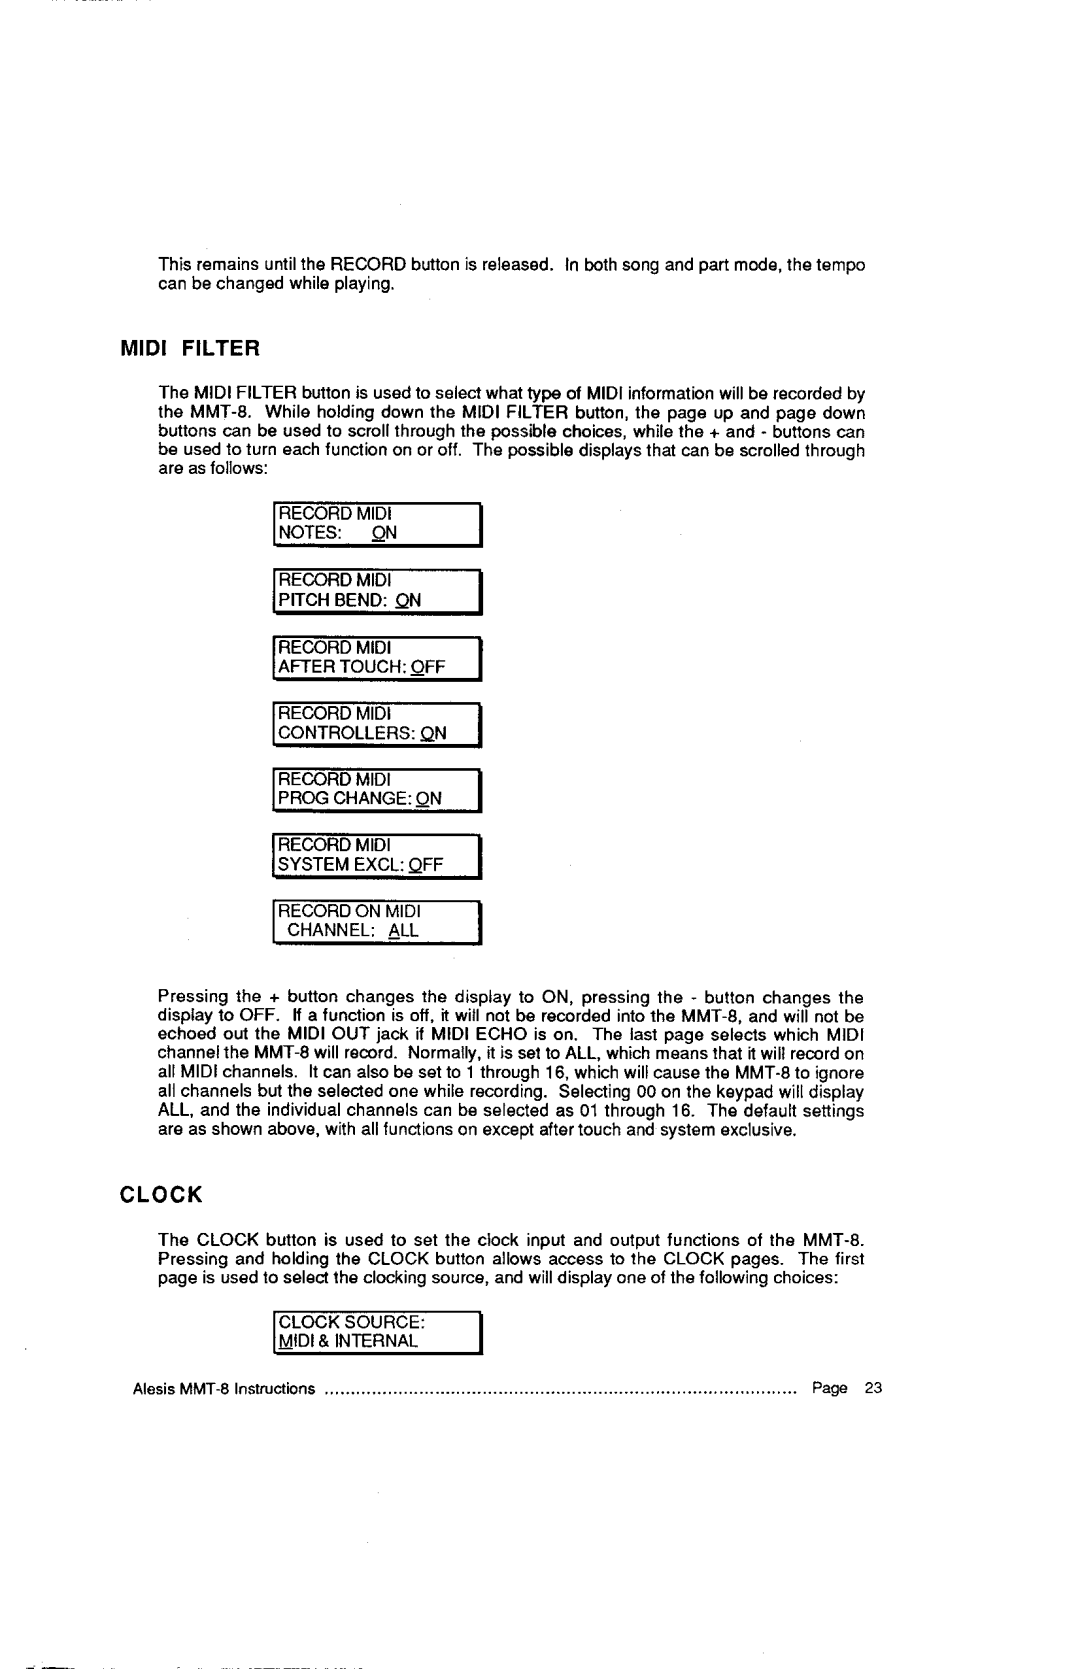 Alesis MMT-8, HR-16:B instruction manual C L O C K 